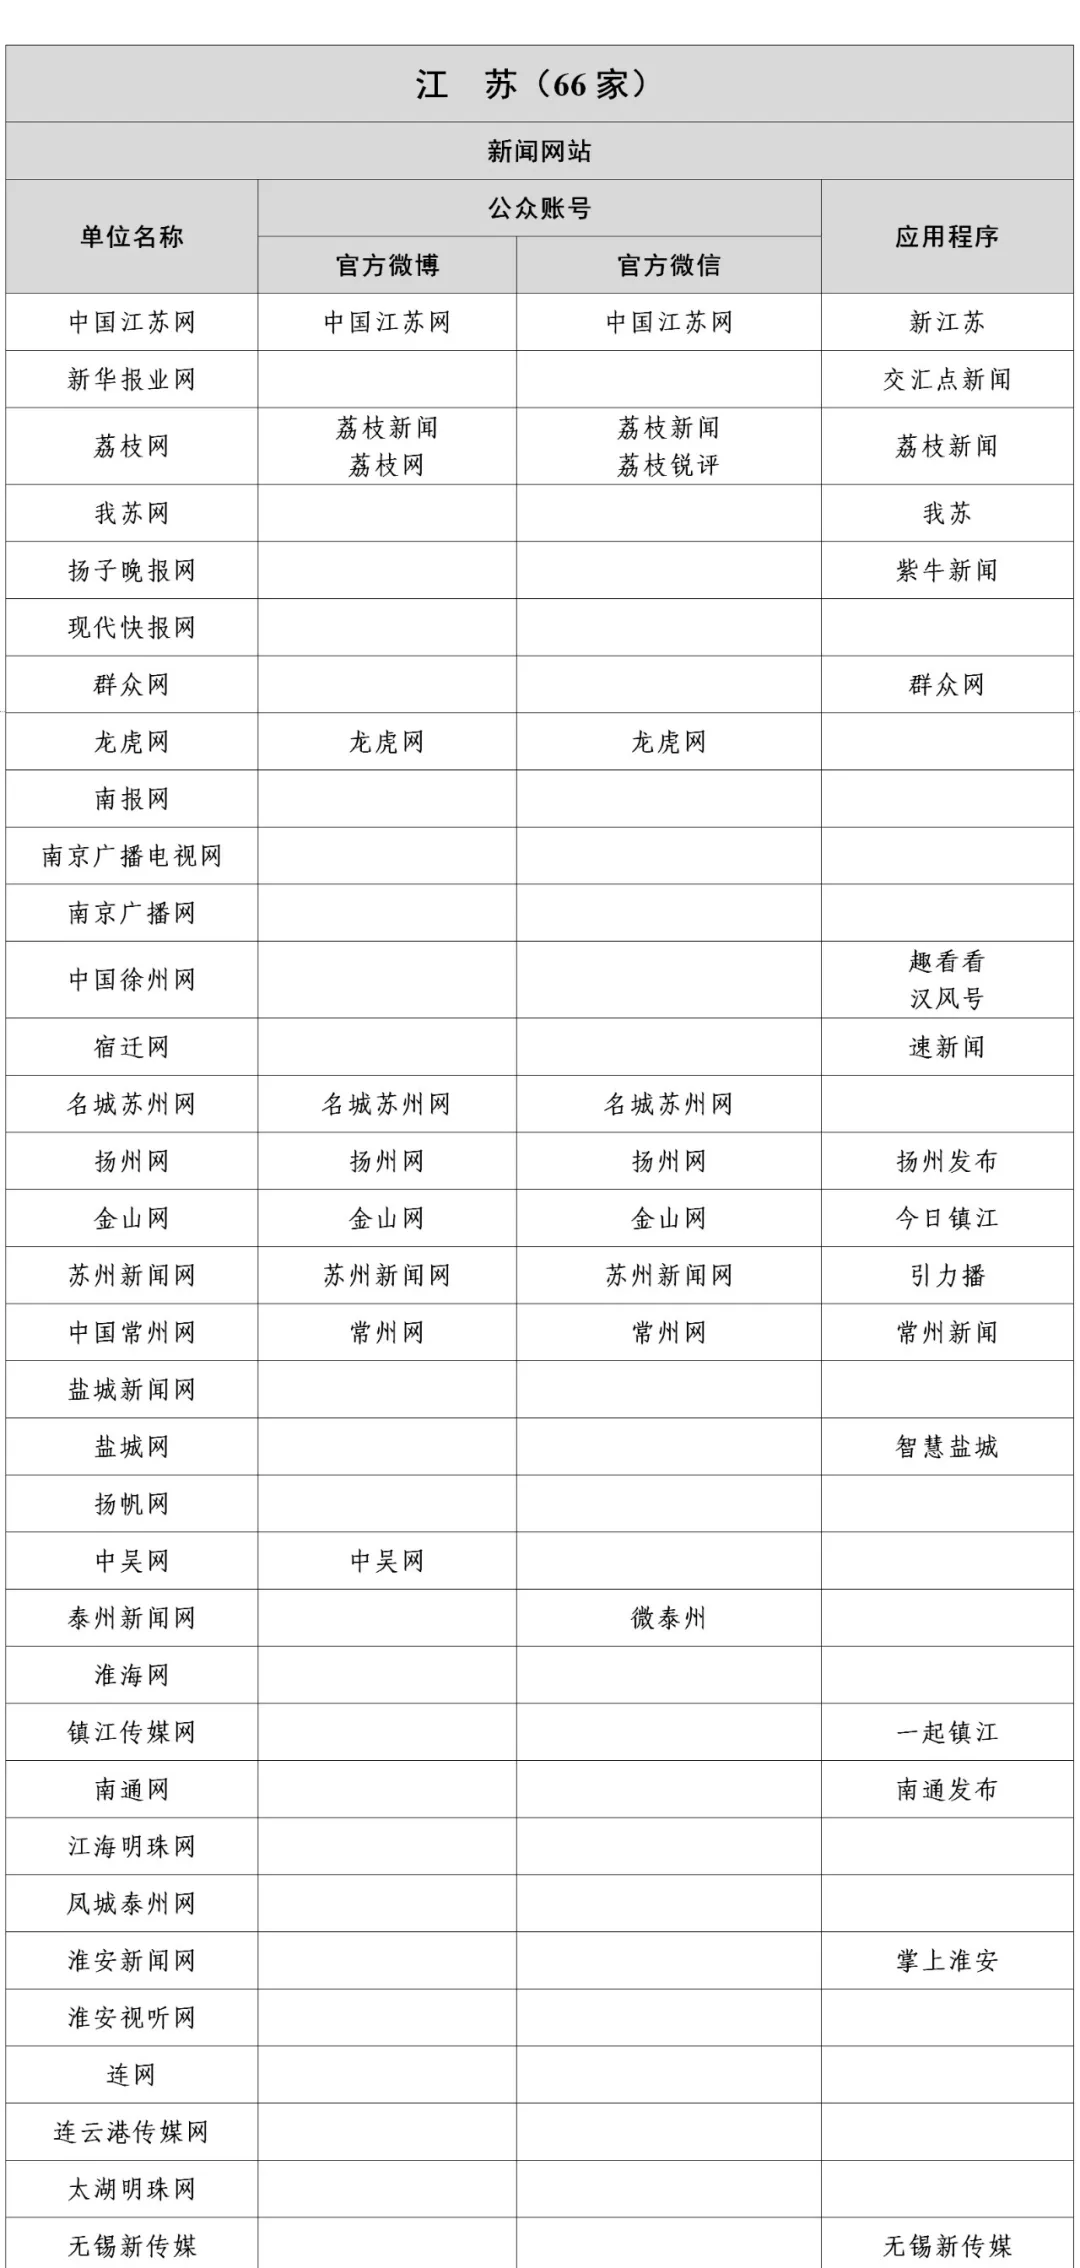 江苏新闻信息稿源单位名单